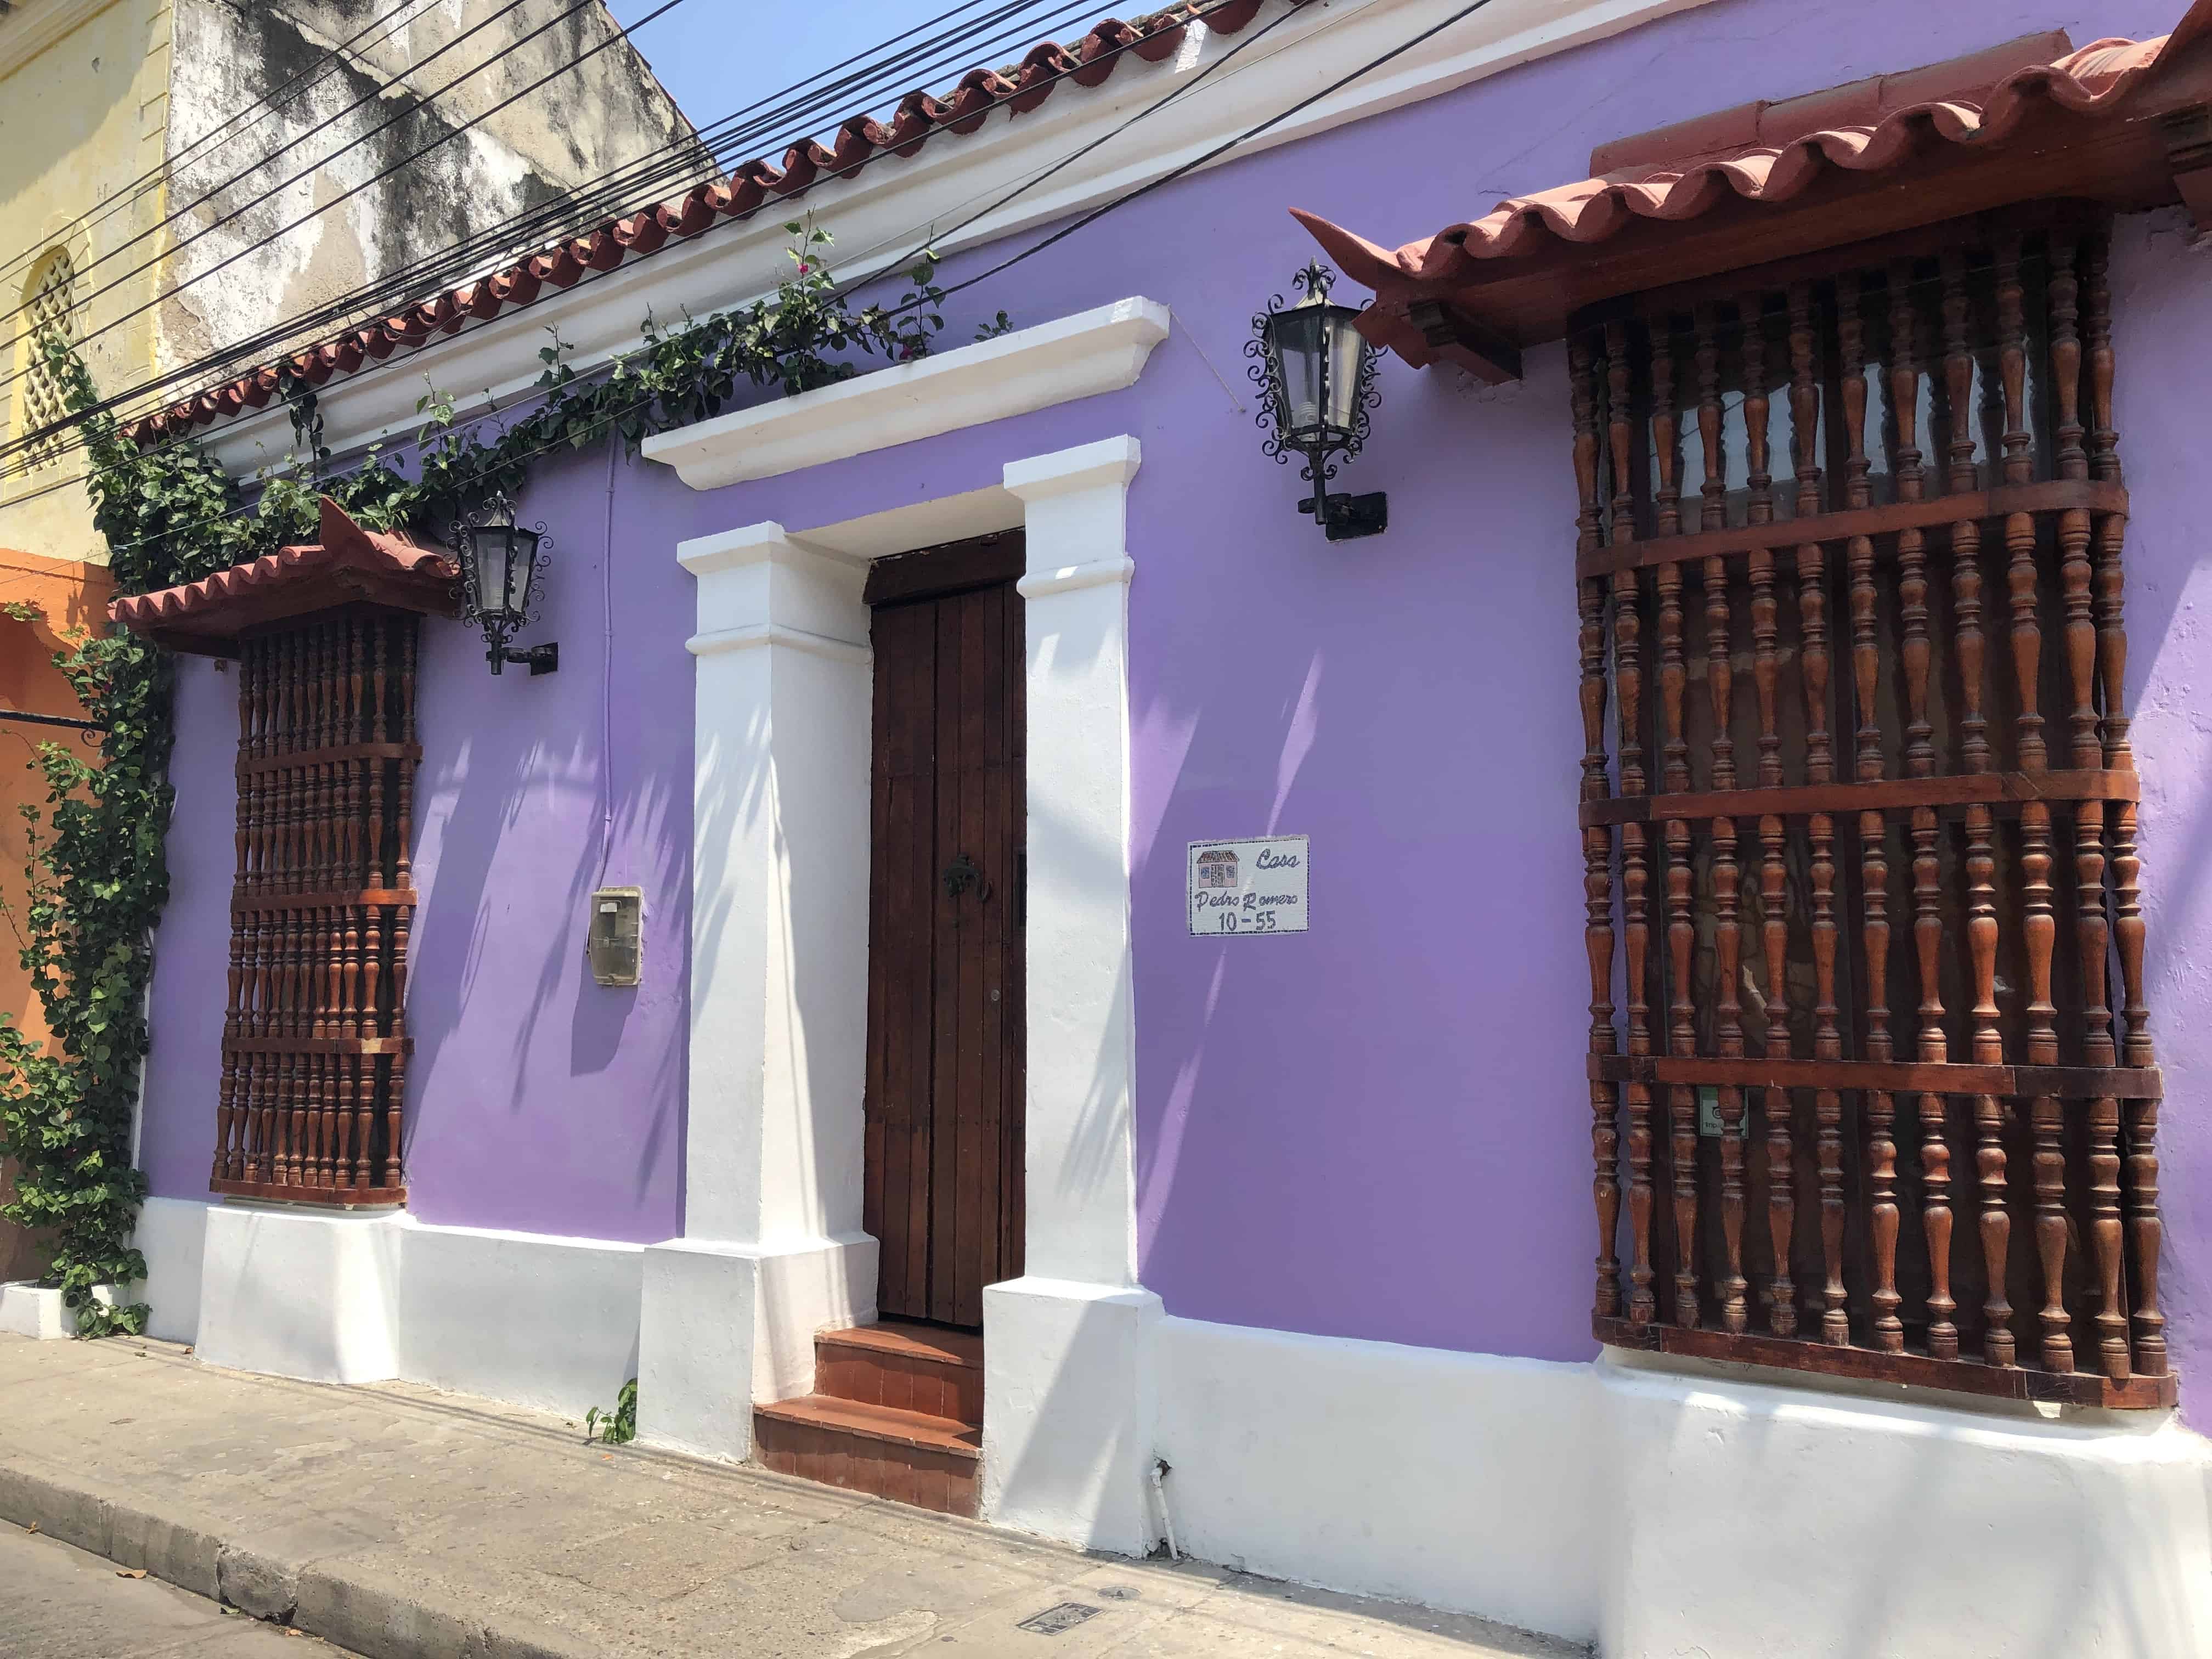 Casa de Pedro Romero in Getsemaní, Cartagena, Colombia